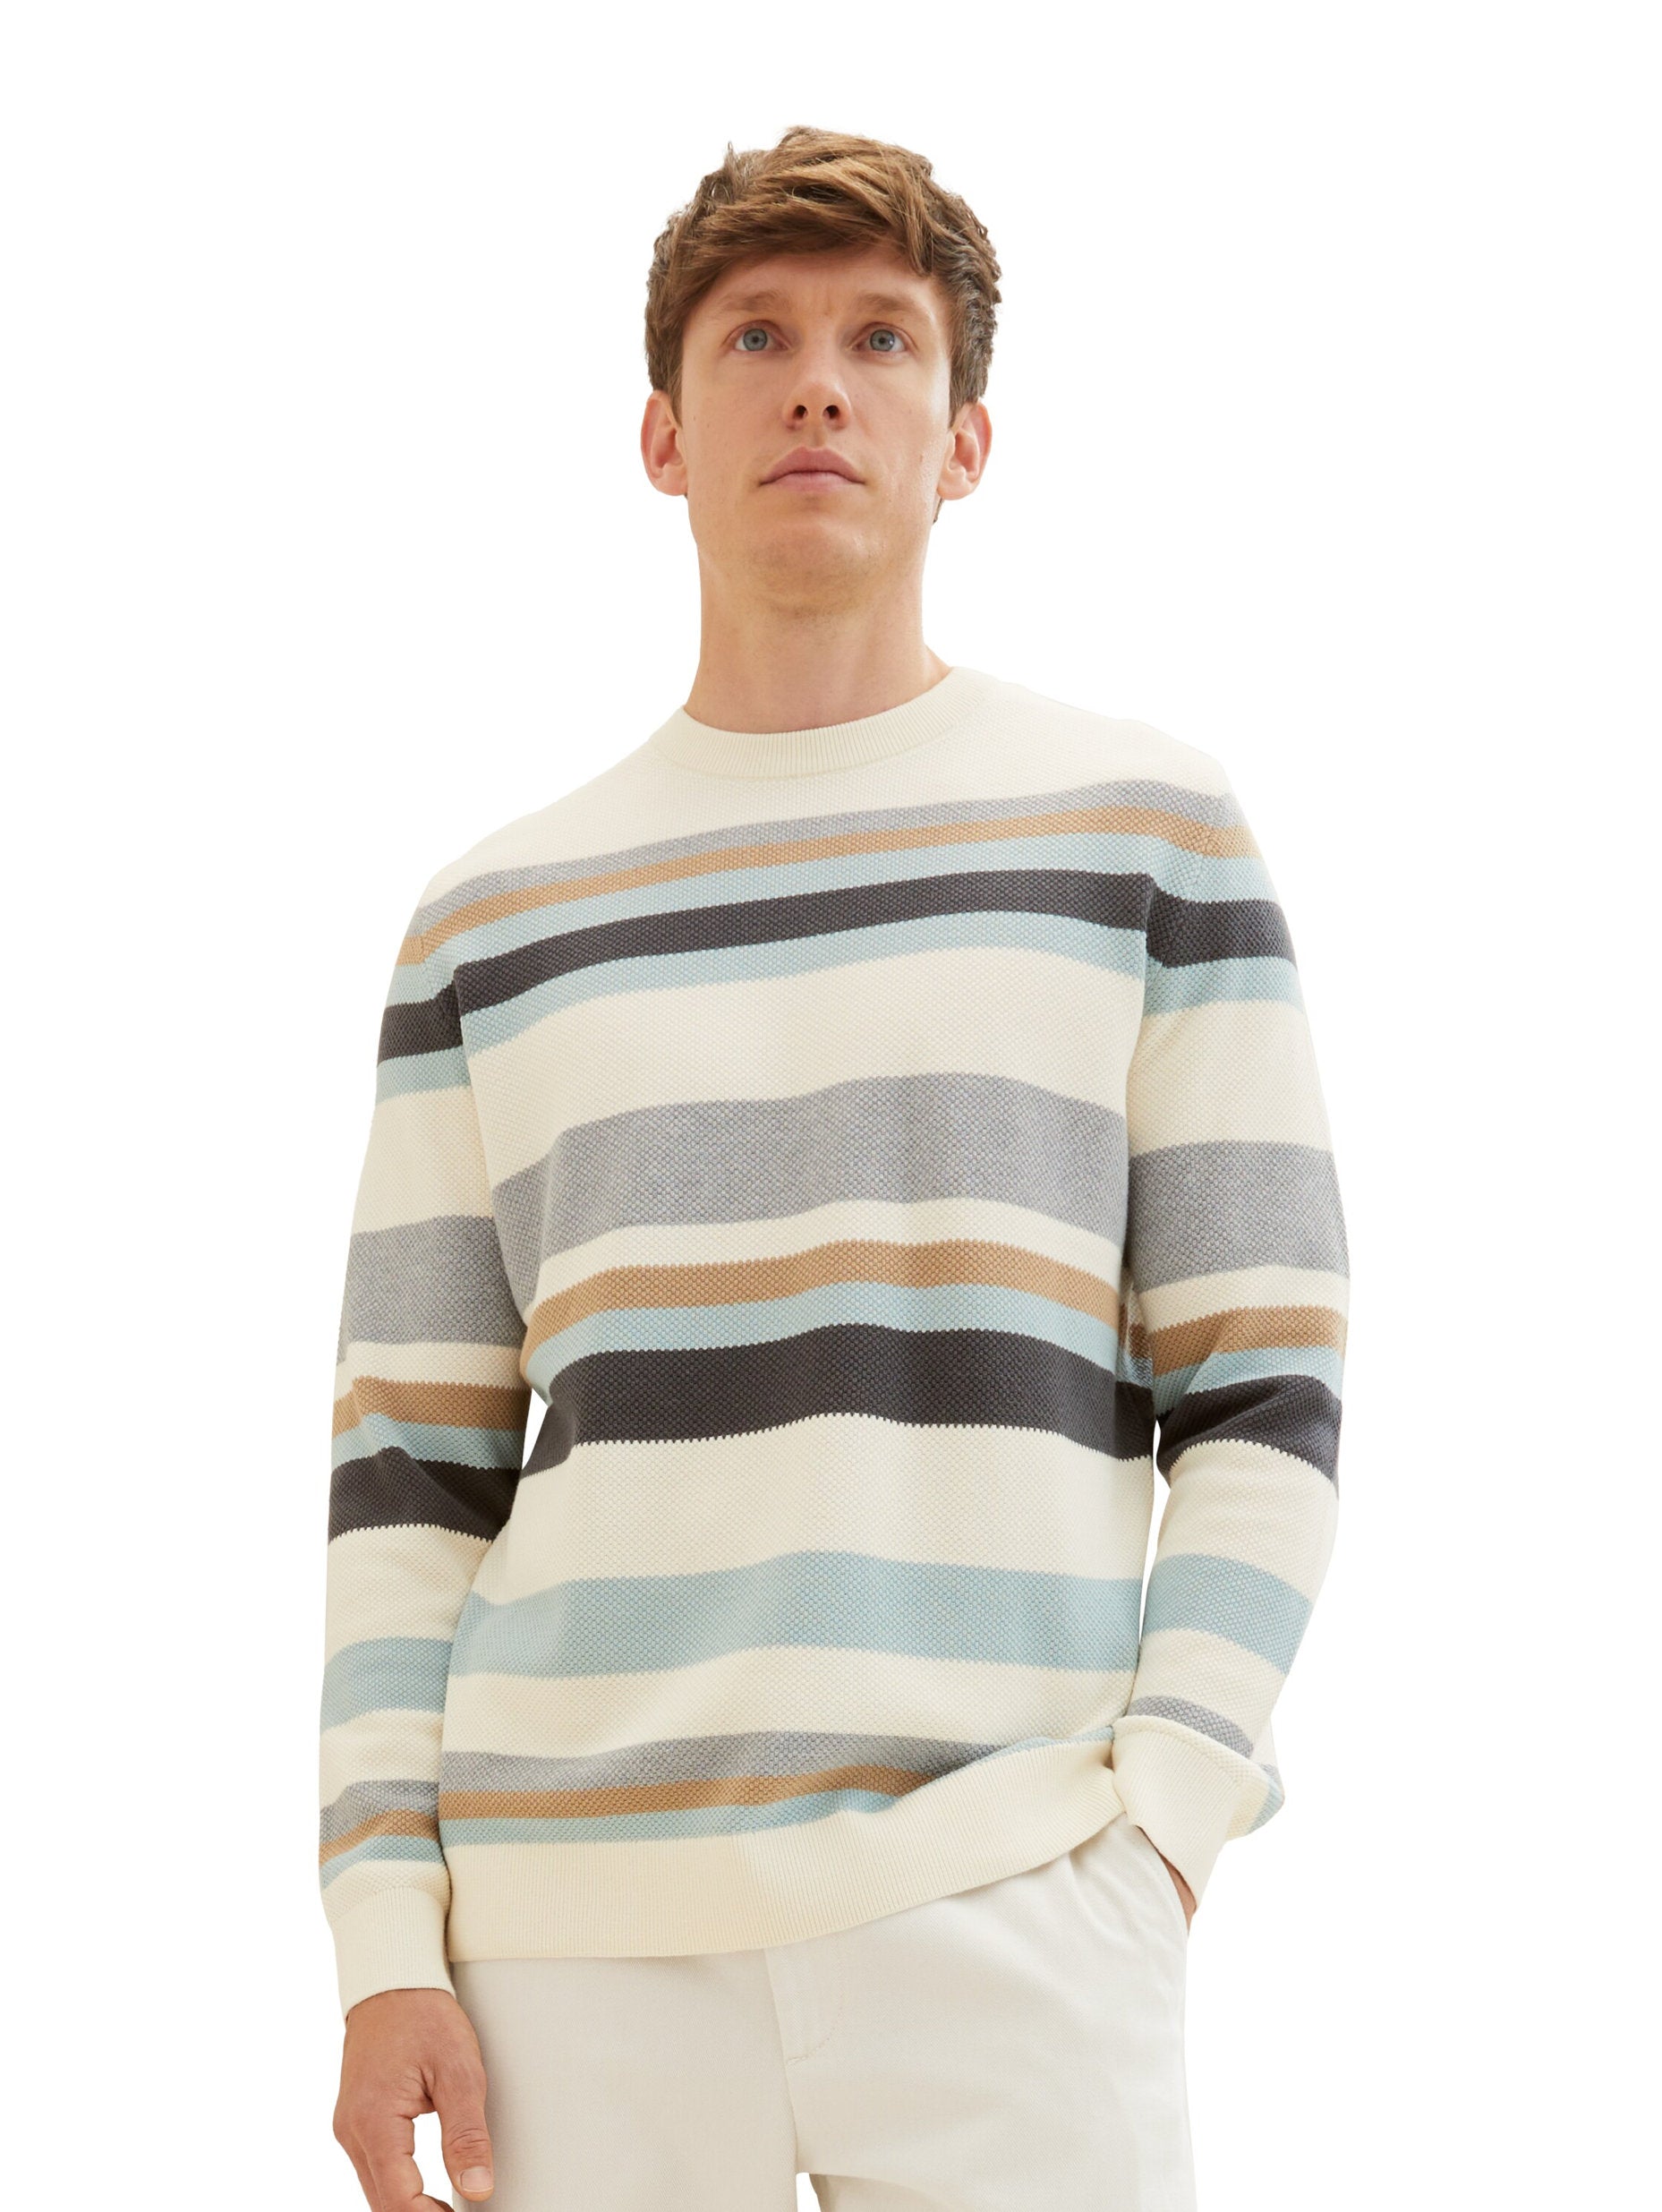 Striped Pullover With Round Neckline_1038200_32760_06